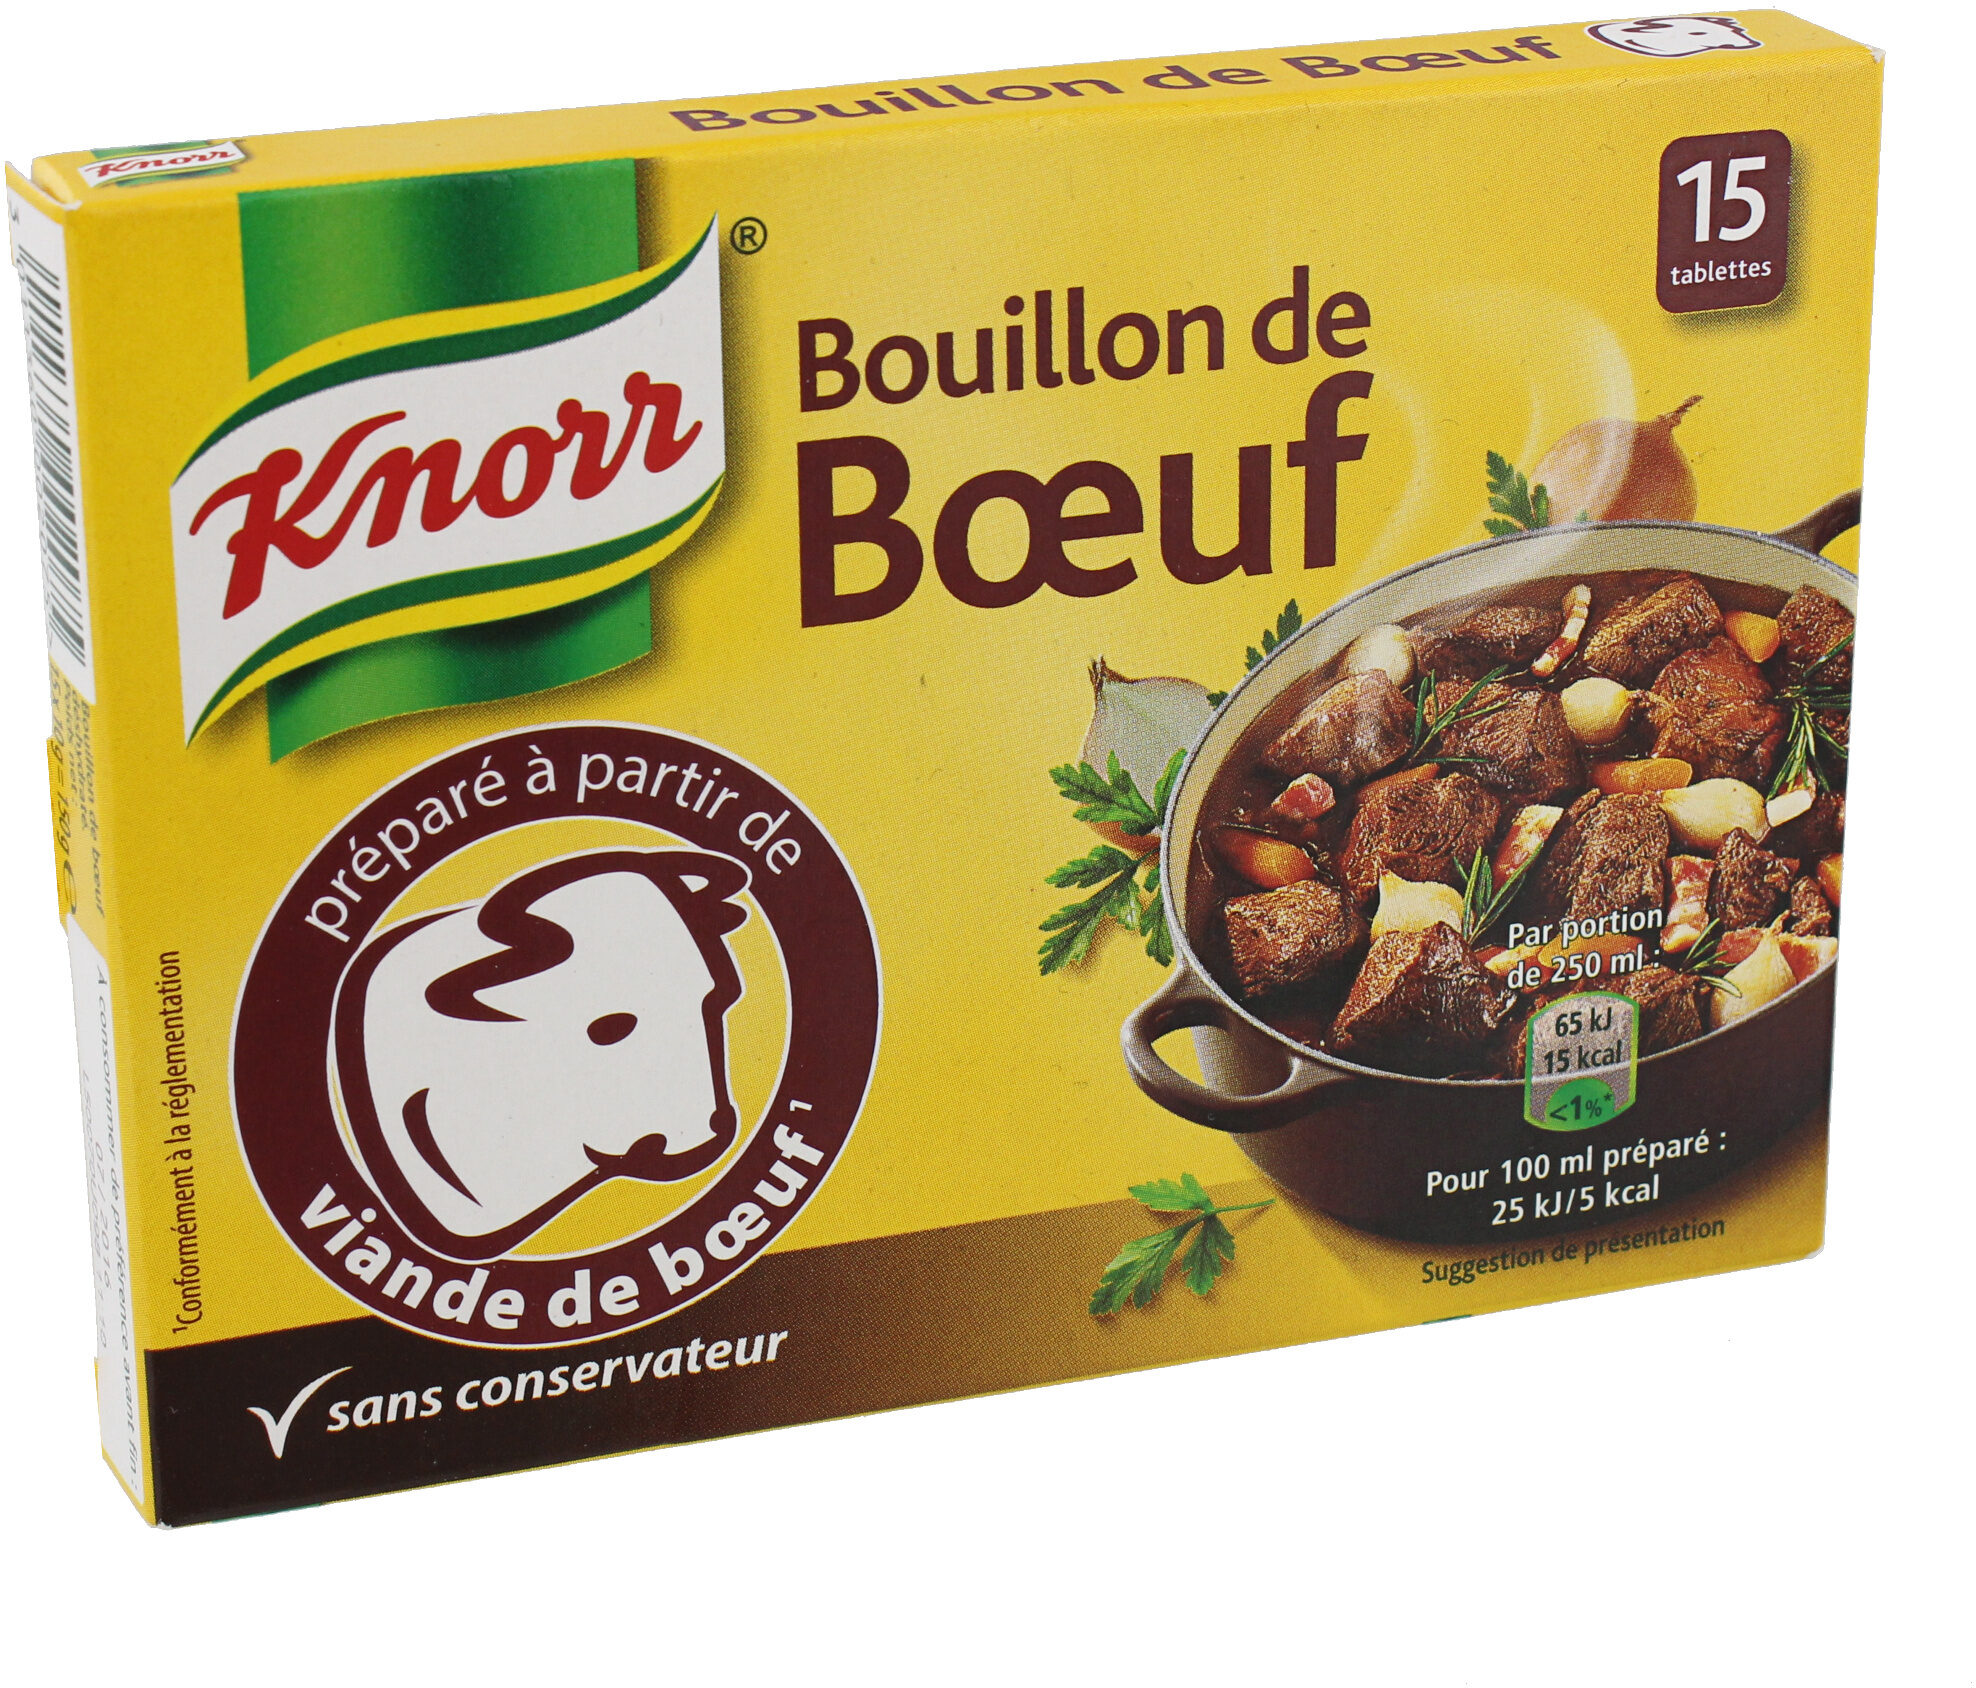 Knorr Bouillon Cube Bœuf 15 Cubes - Producto - en